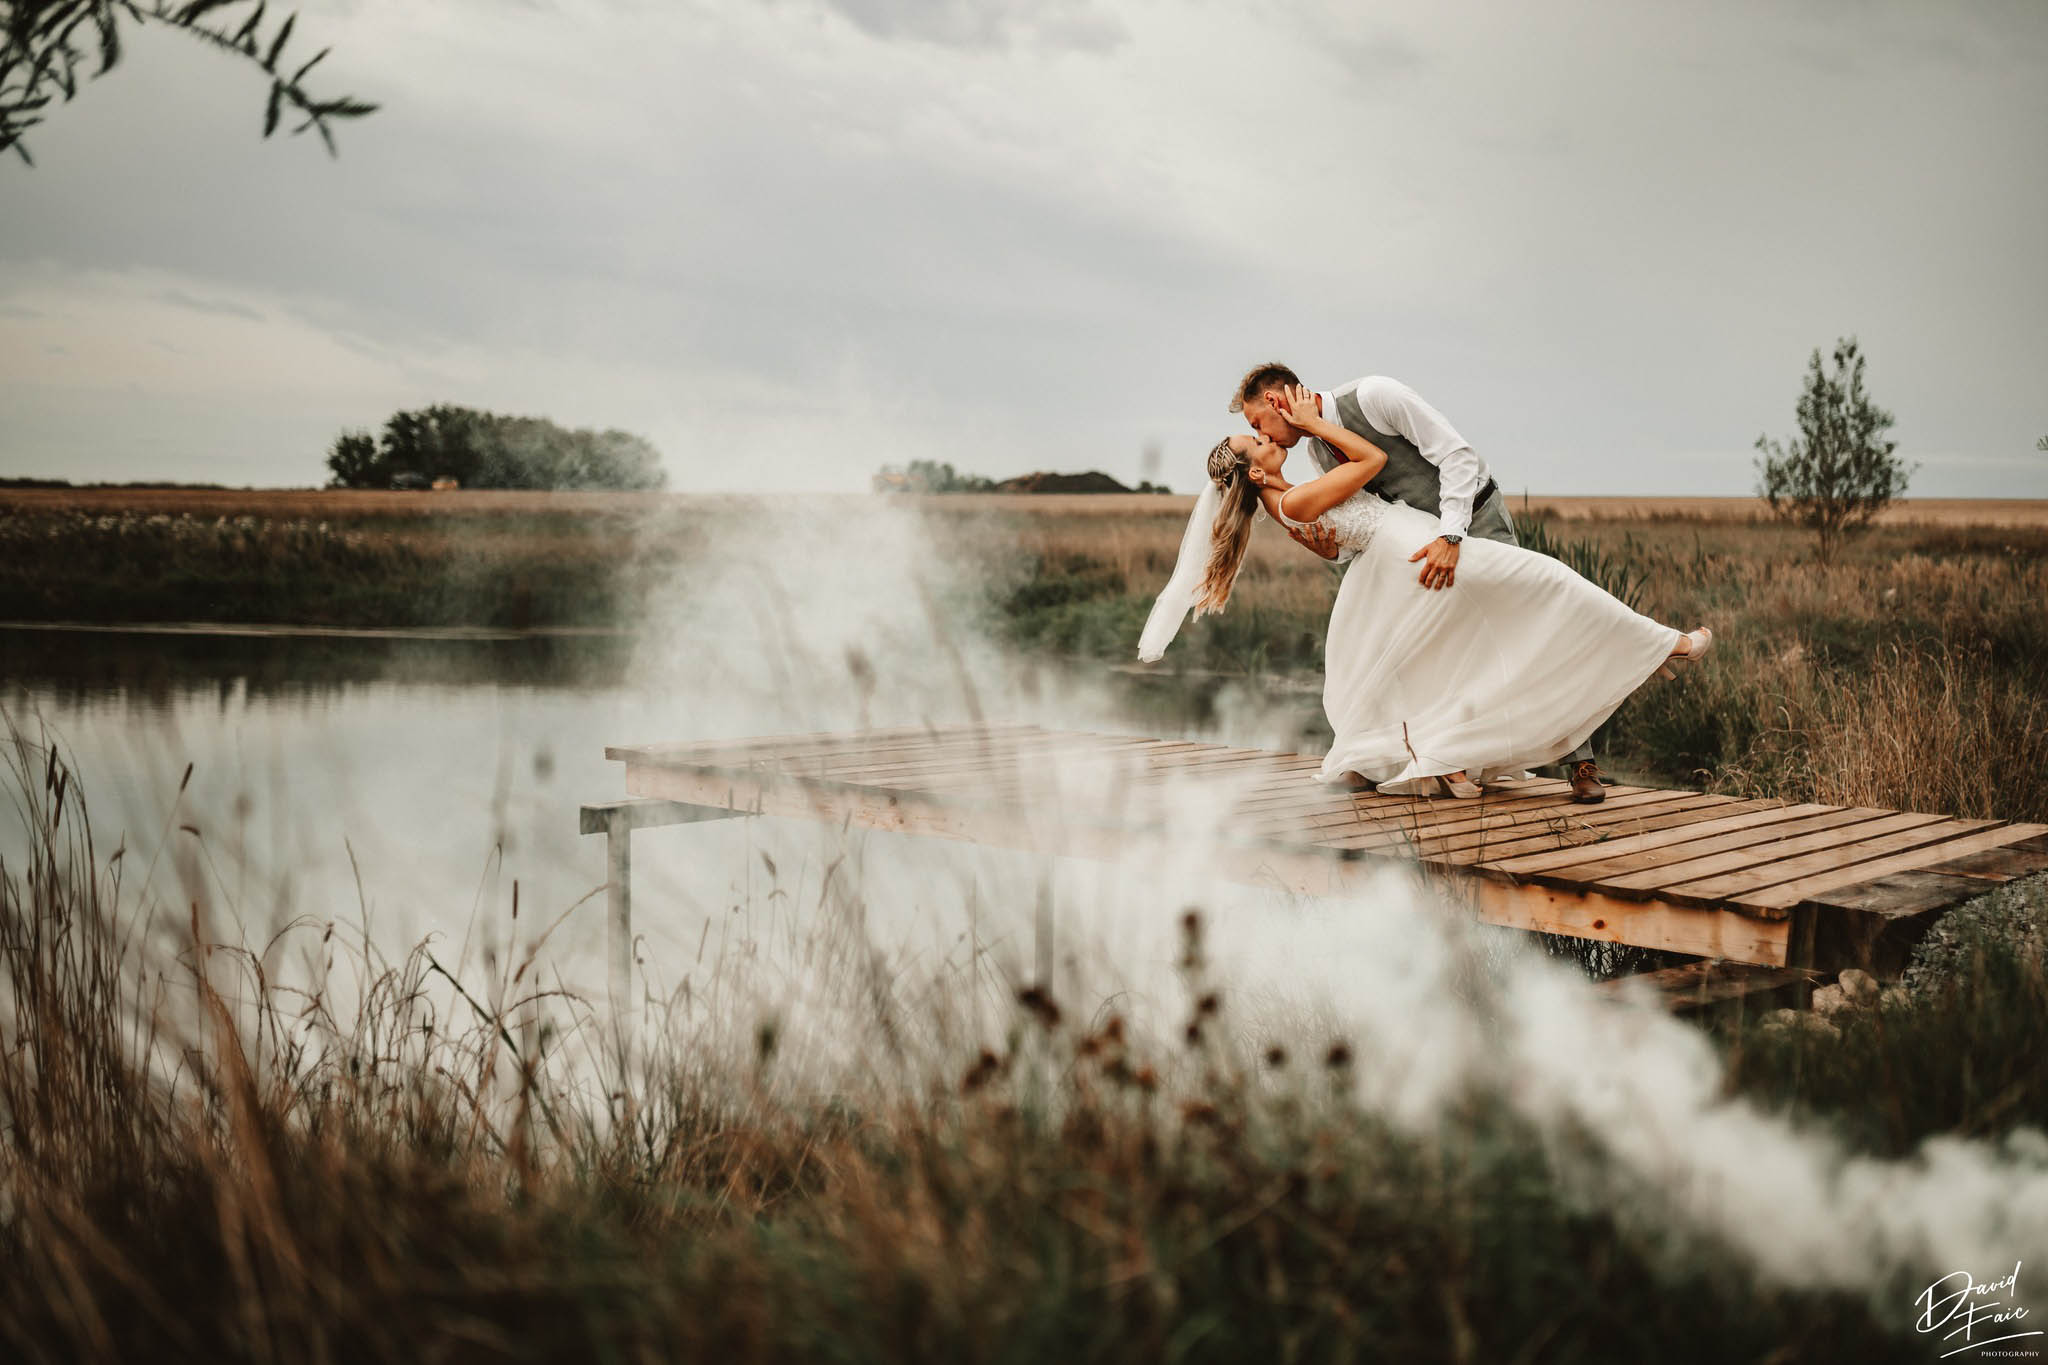 David Faic photography, svatba, svatební fotograf, svatební fotograf jižní Čechy, svatební fotograf Tábor, svatební fotoalba, profesionální svatební fotograf